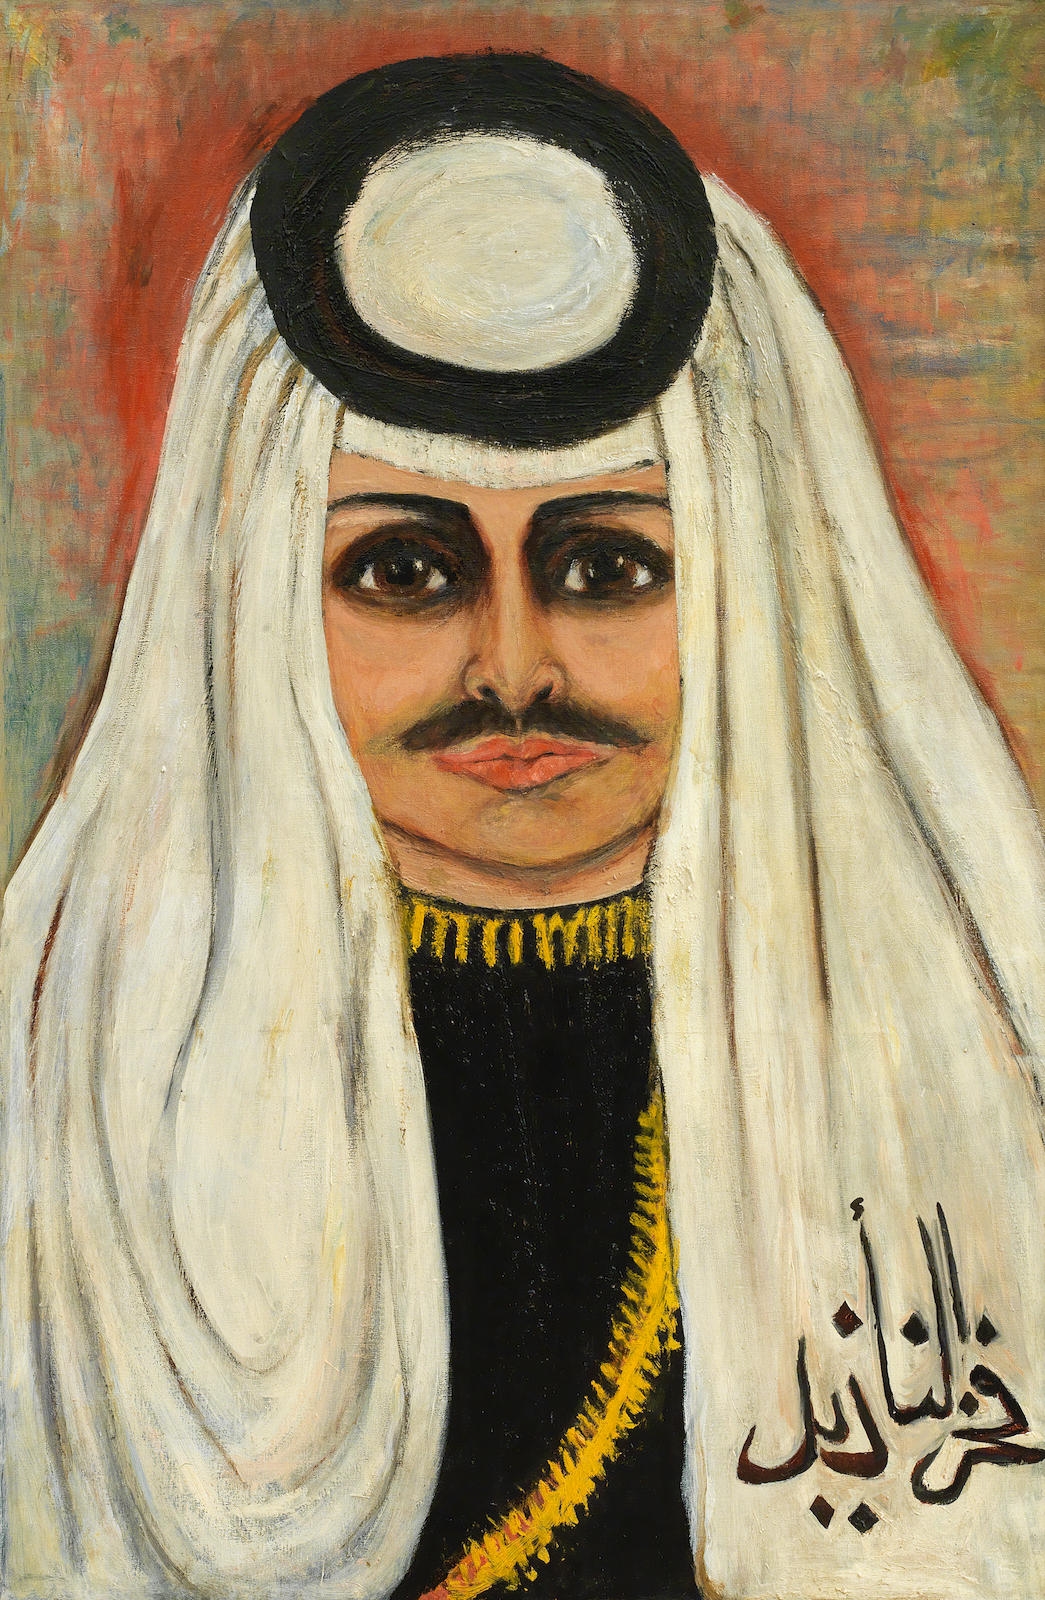 Portrait of King Hussein of Jordan (Eternal Youth) by Fahr-el-Nissa Zeid, 1973